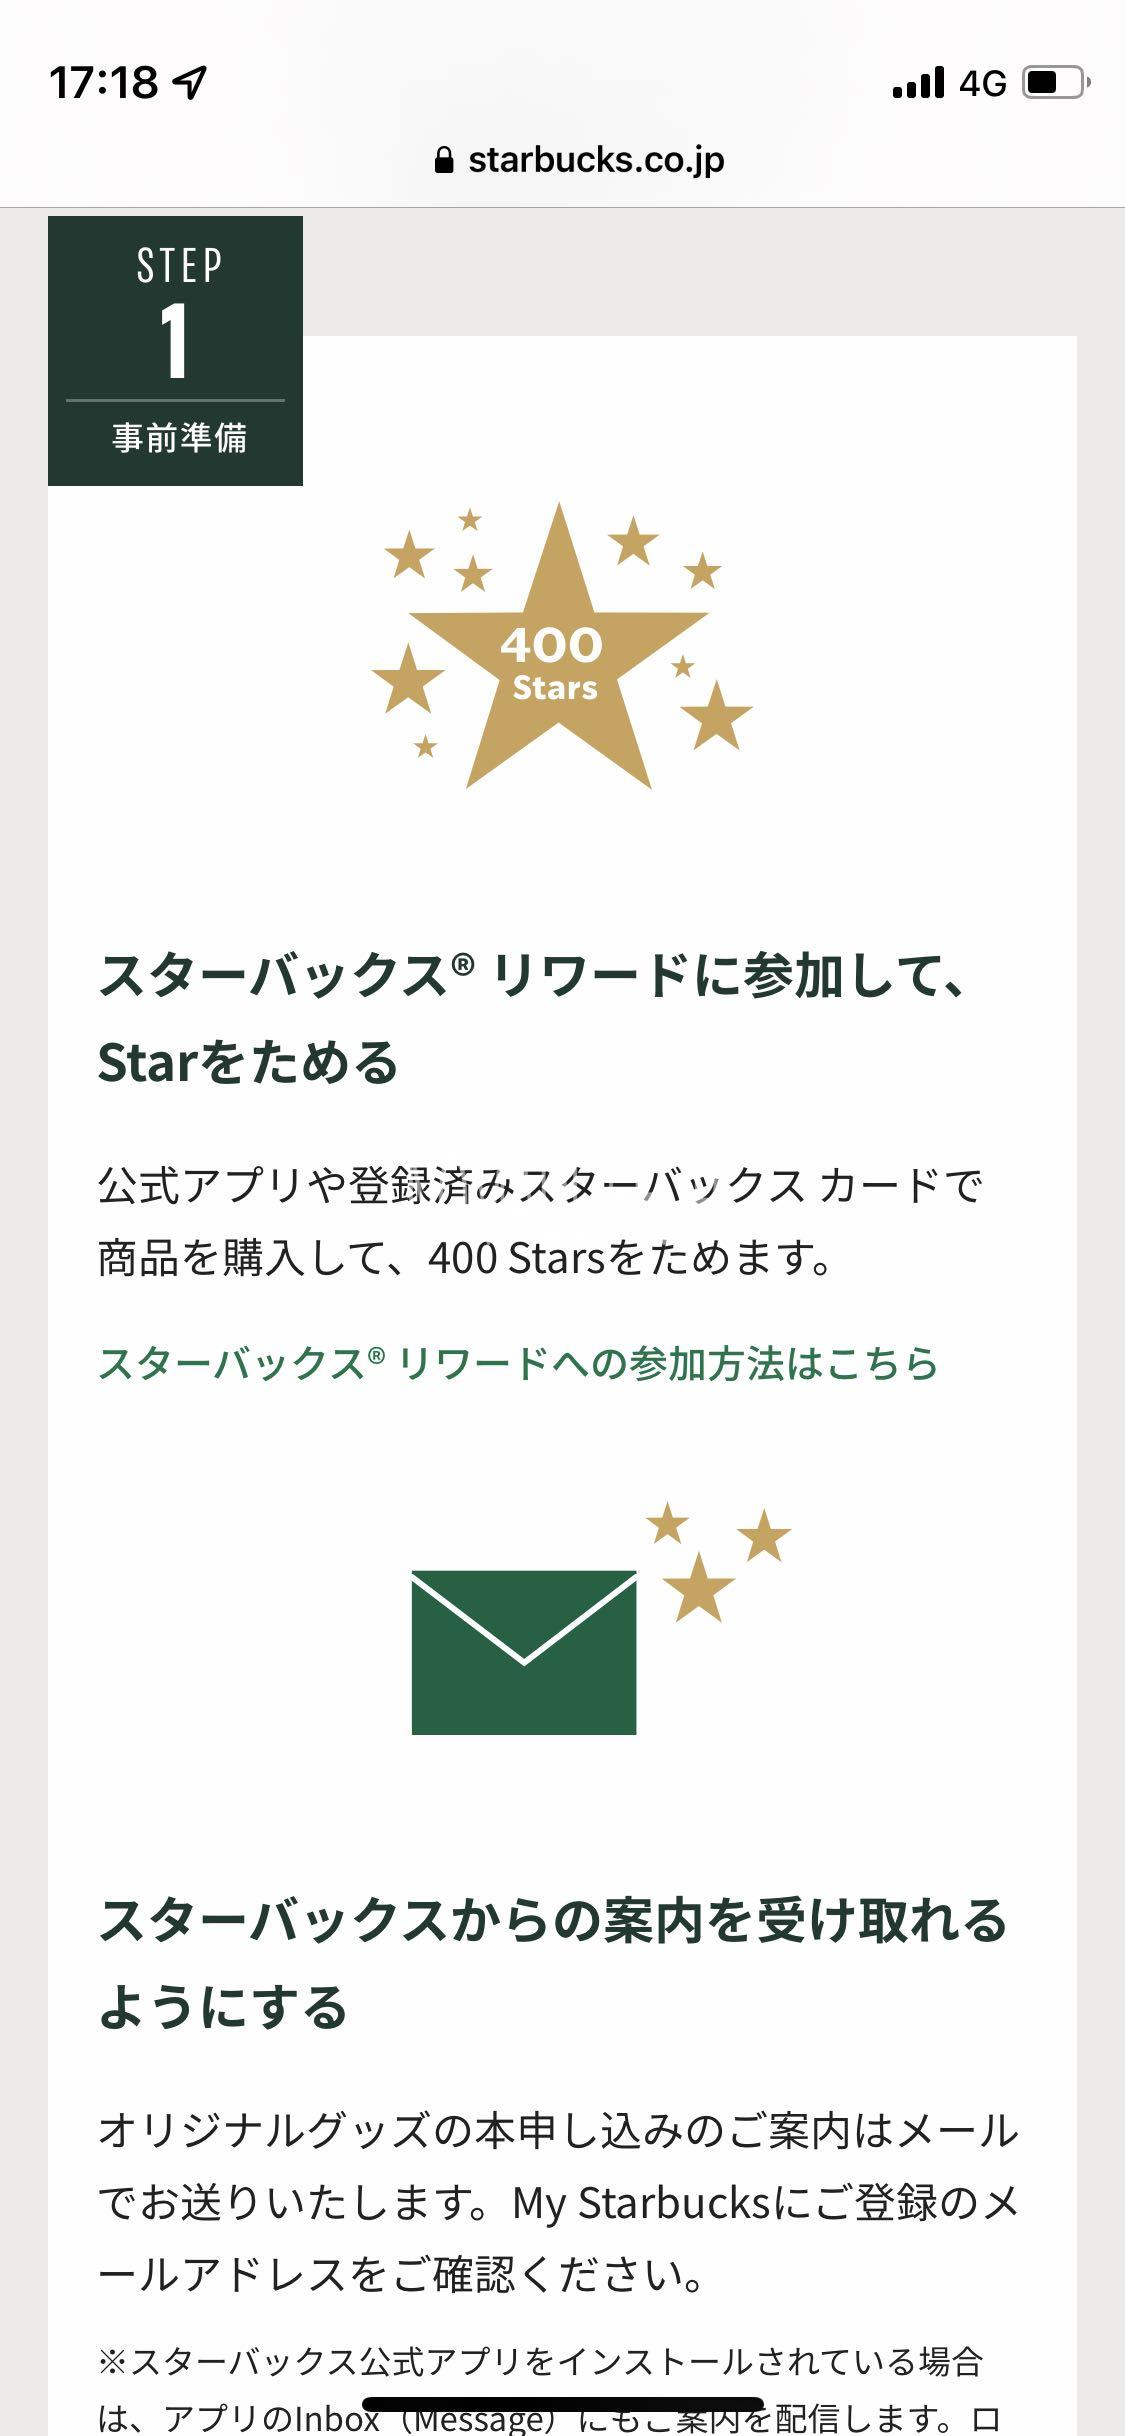 Starbucs rewards request